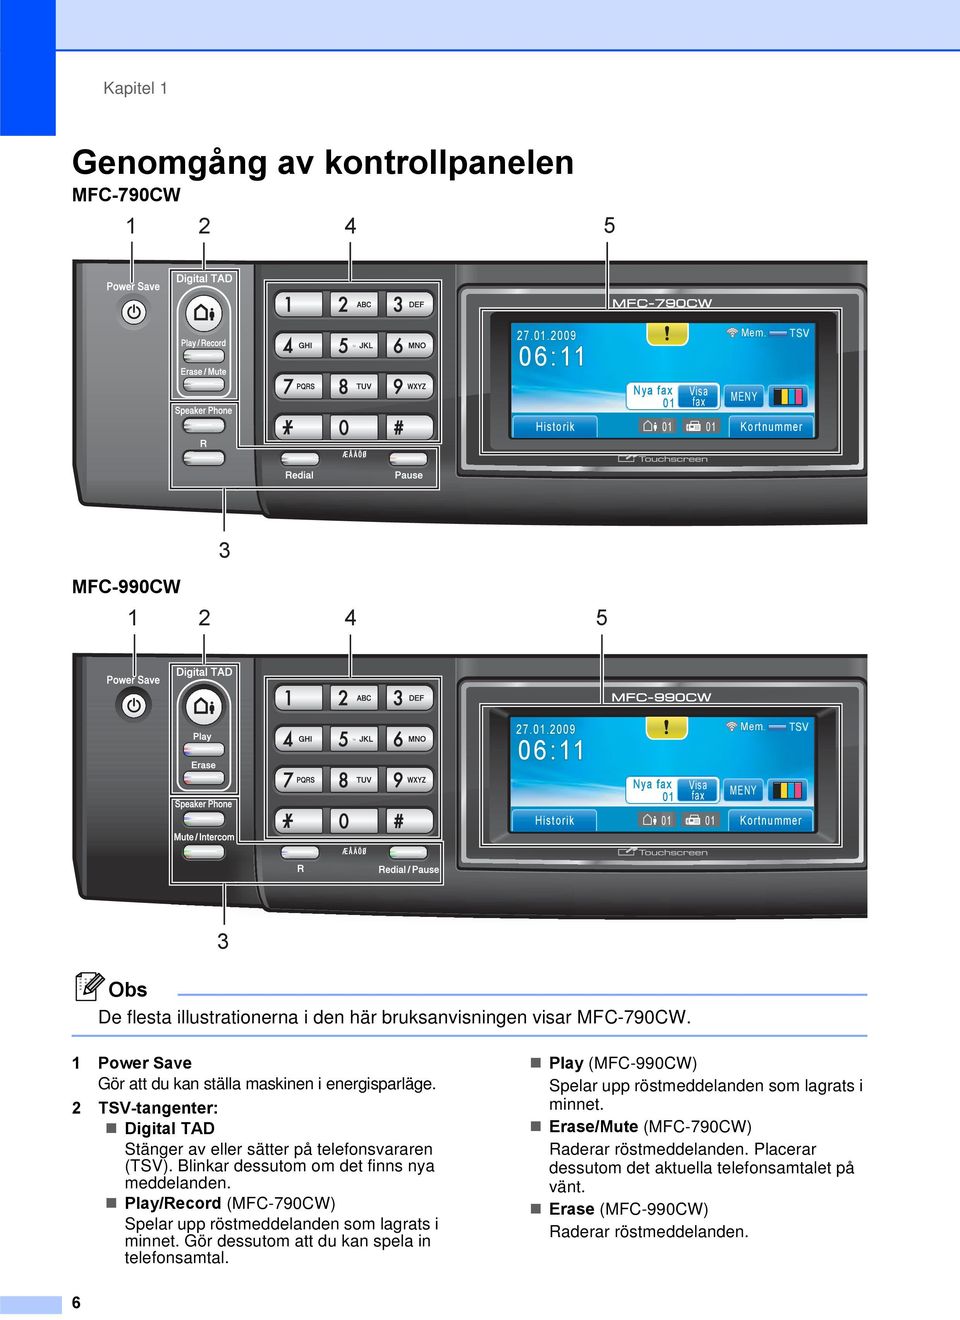 1 Power Save Gör att du kan ställa maskinen i energisparläge. 2 TSV-tangenter: Digital TAD Stänger av eller sätter på telefonsvararen (TSV). Blinkar dessutom om det finns nya meddelanden.